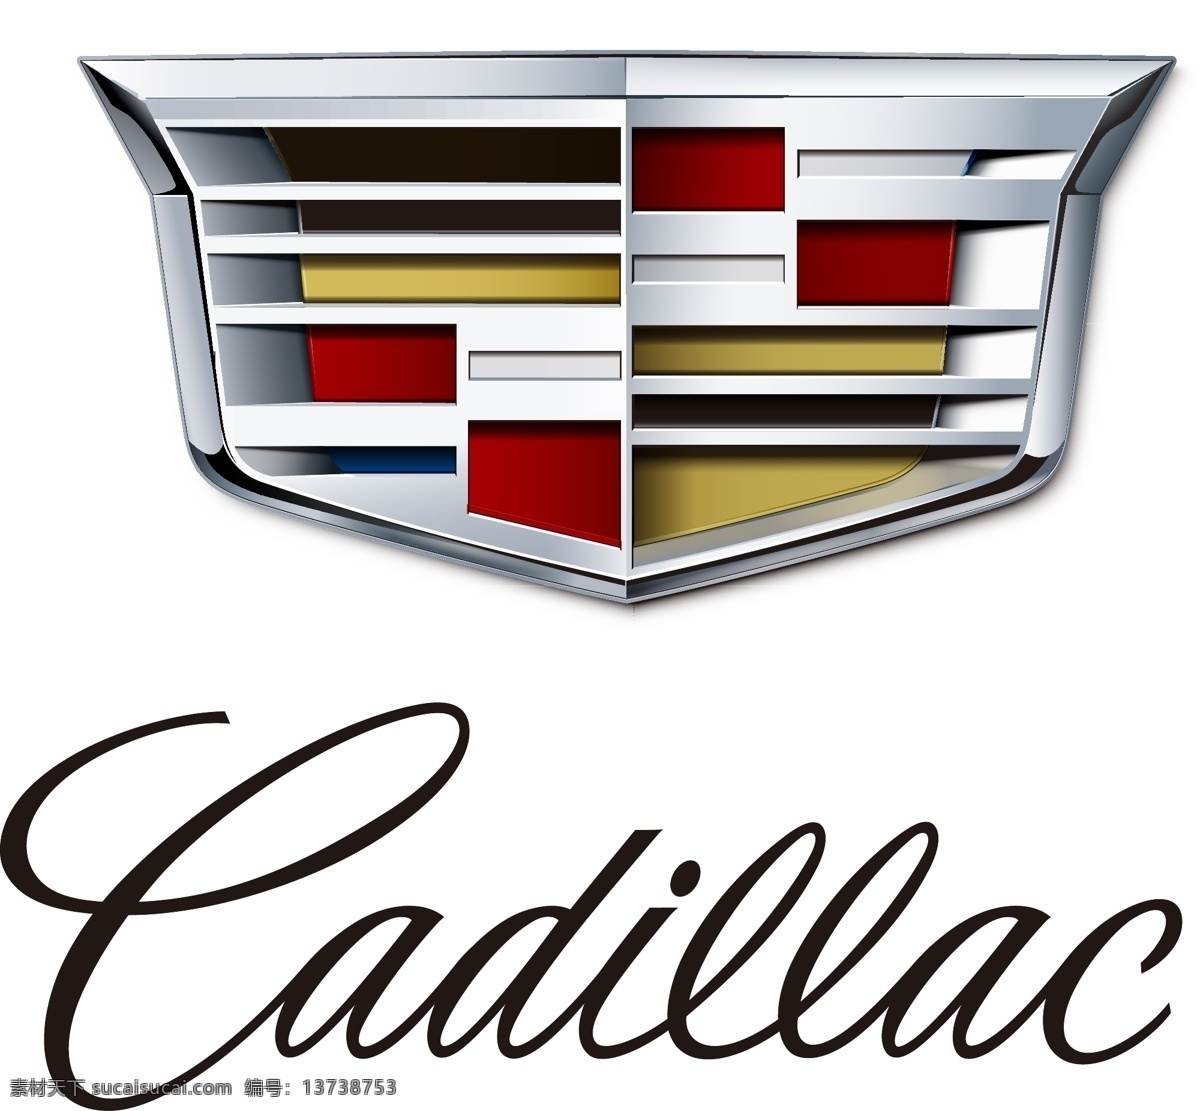 凯迪拉克 最新 logo 矢量图 汽车 logo设计